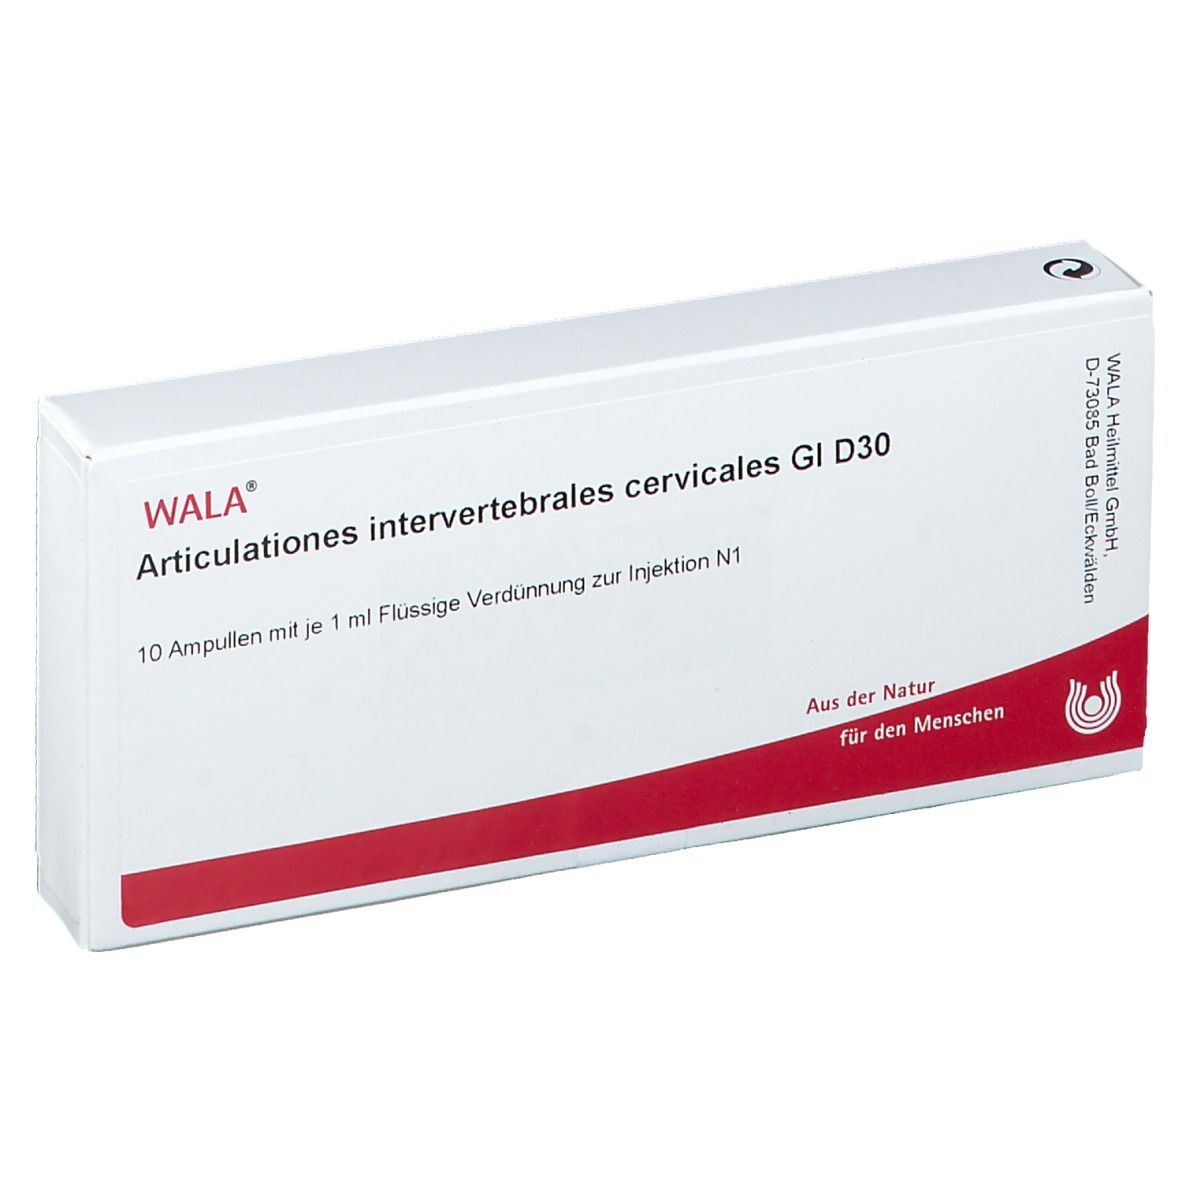 Wala® Articulationes intervertebrales cervicales Gl D 30